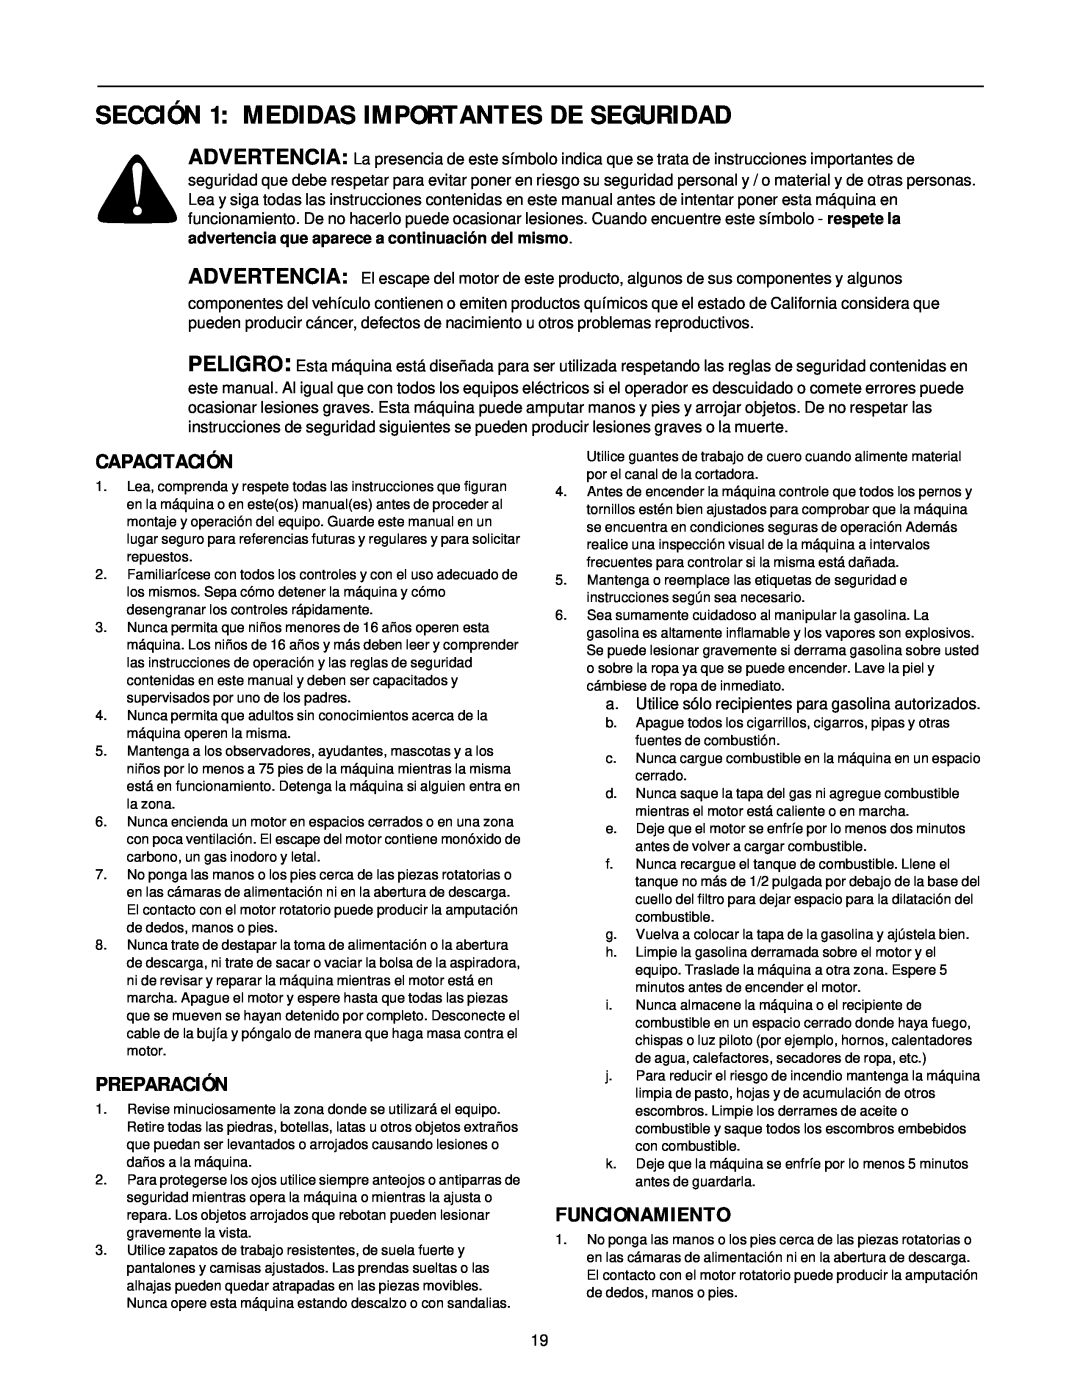 MTD 24A-020D000 manual SECCIÓN 1 MEDIDAS IMPORTANTES DE SEGURIDAD, Capacitación, Preparación, Funcionamiento 